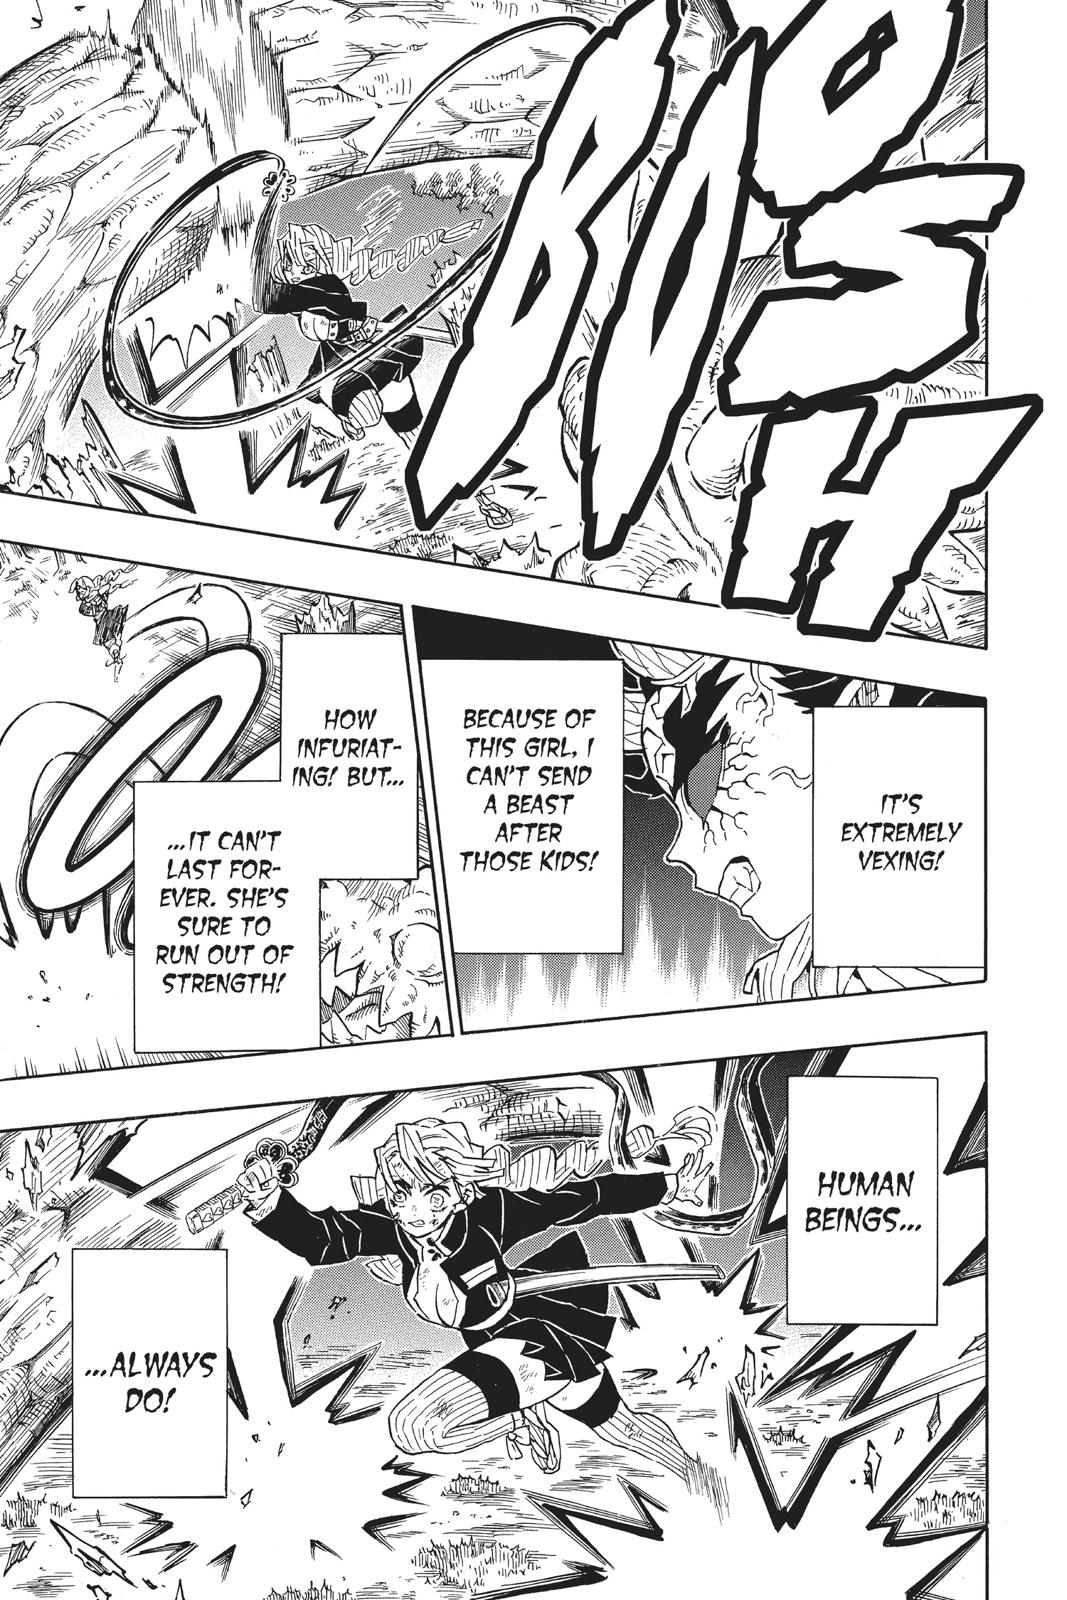 Demon Slayer Manga Manga Chapter - 124 - image 8